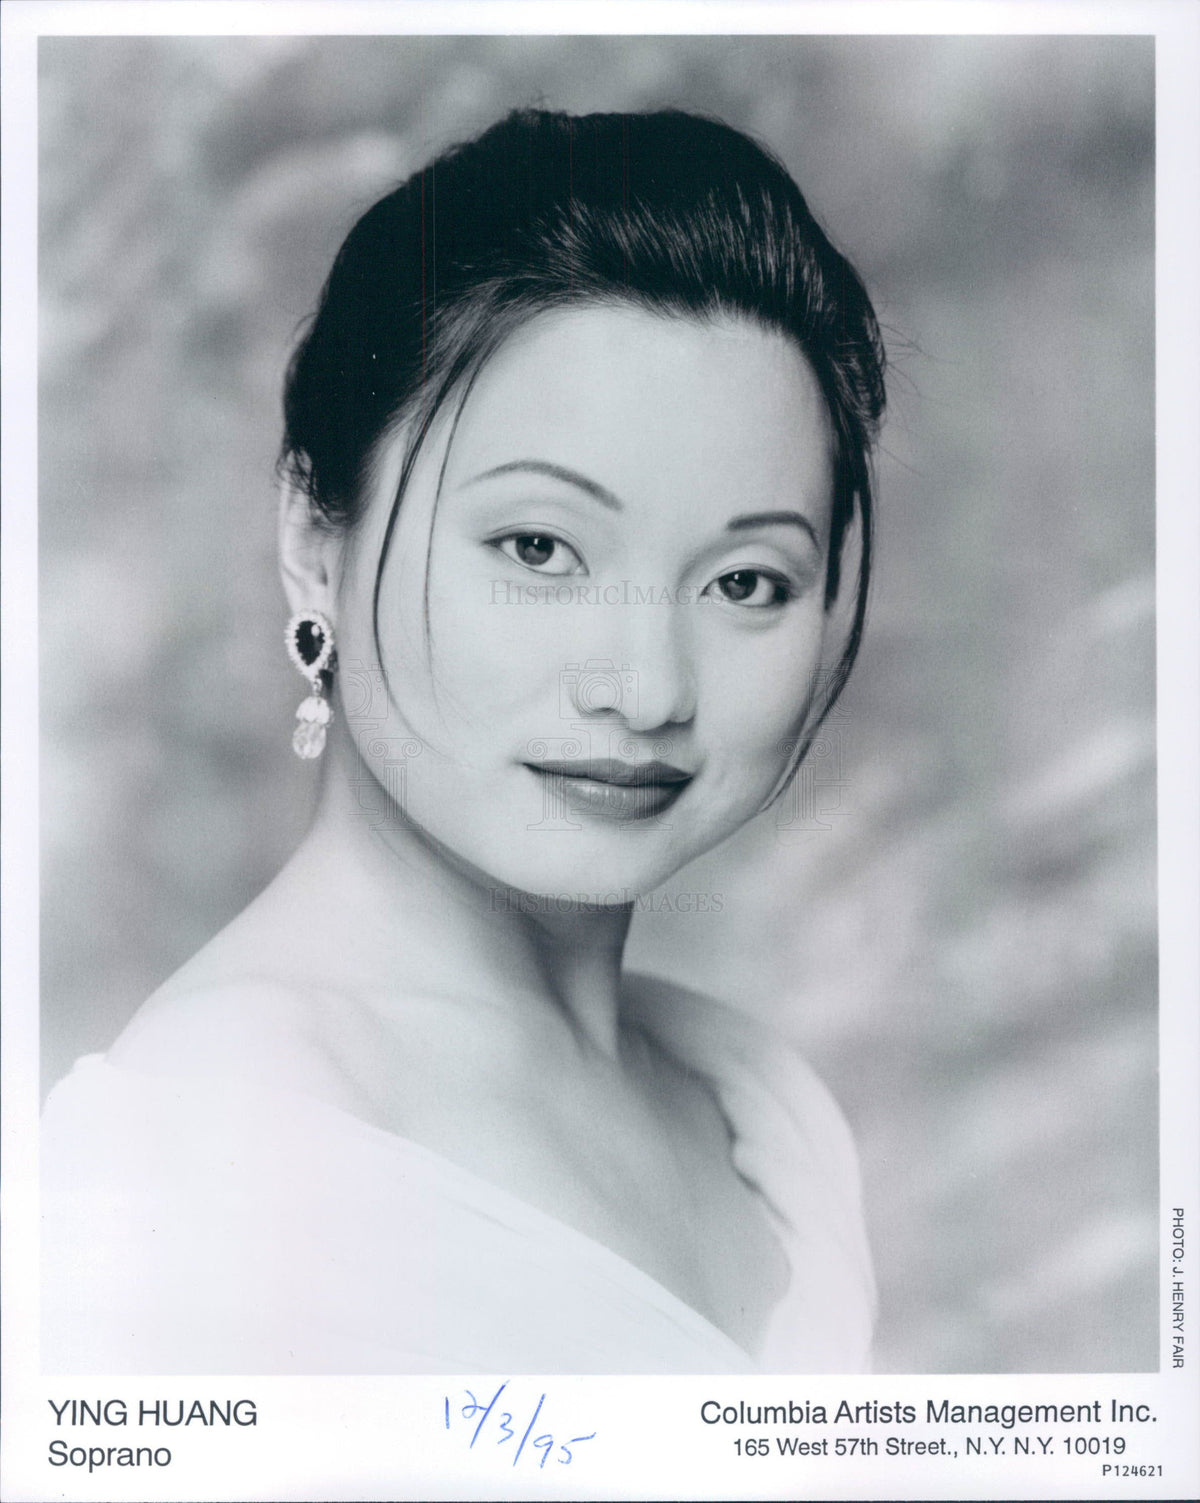 1995 Soprano Ying Huang Press Photo - Historic Images